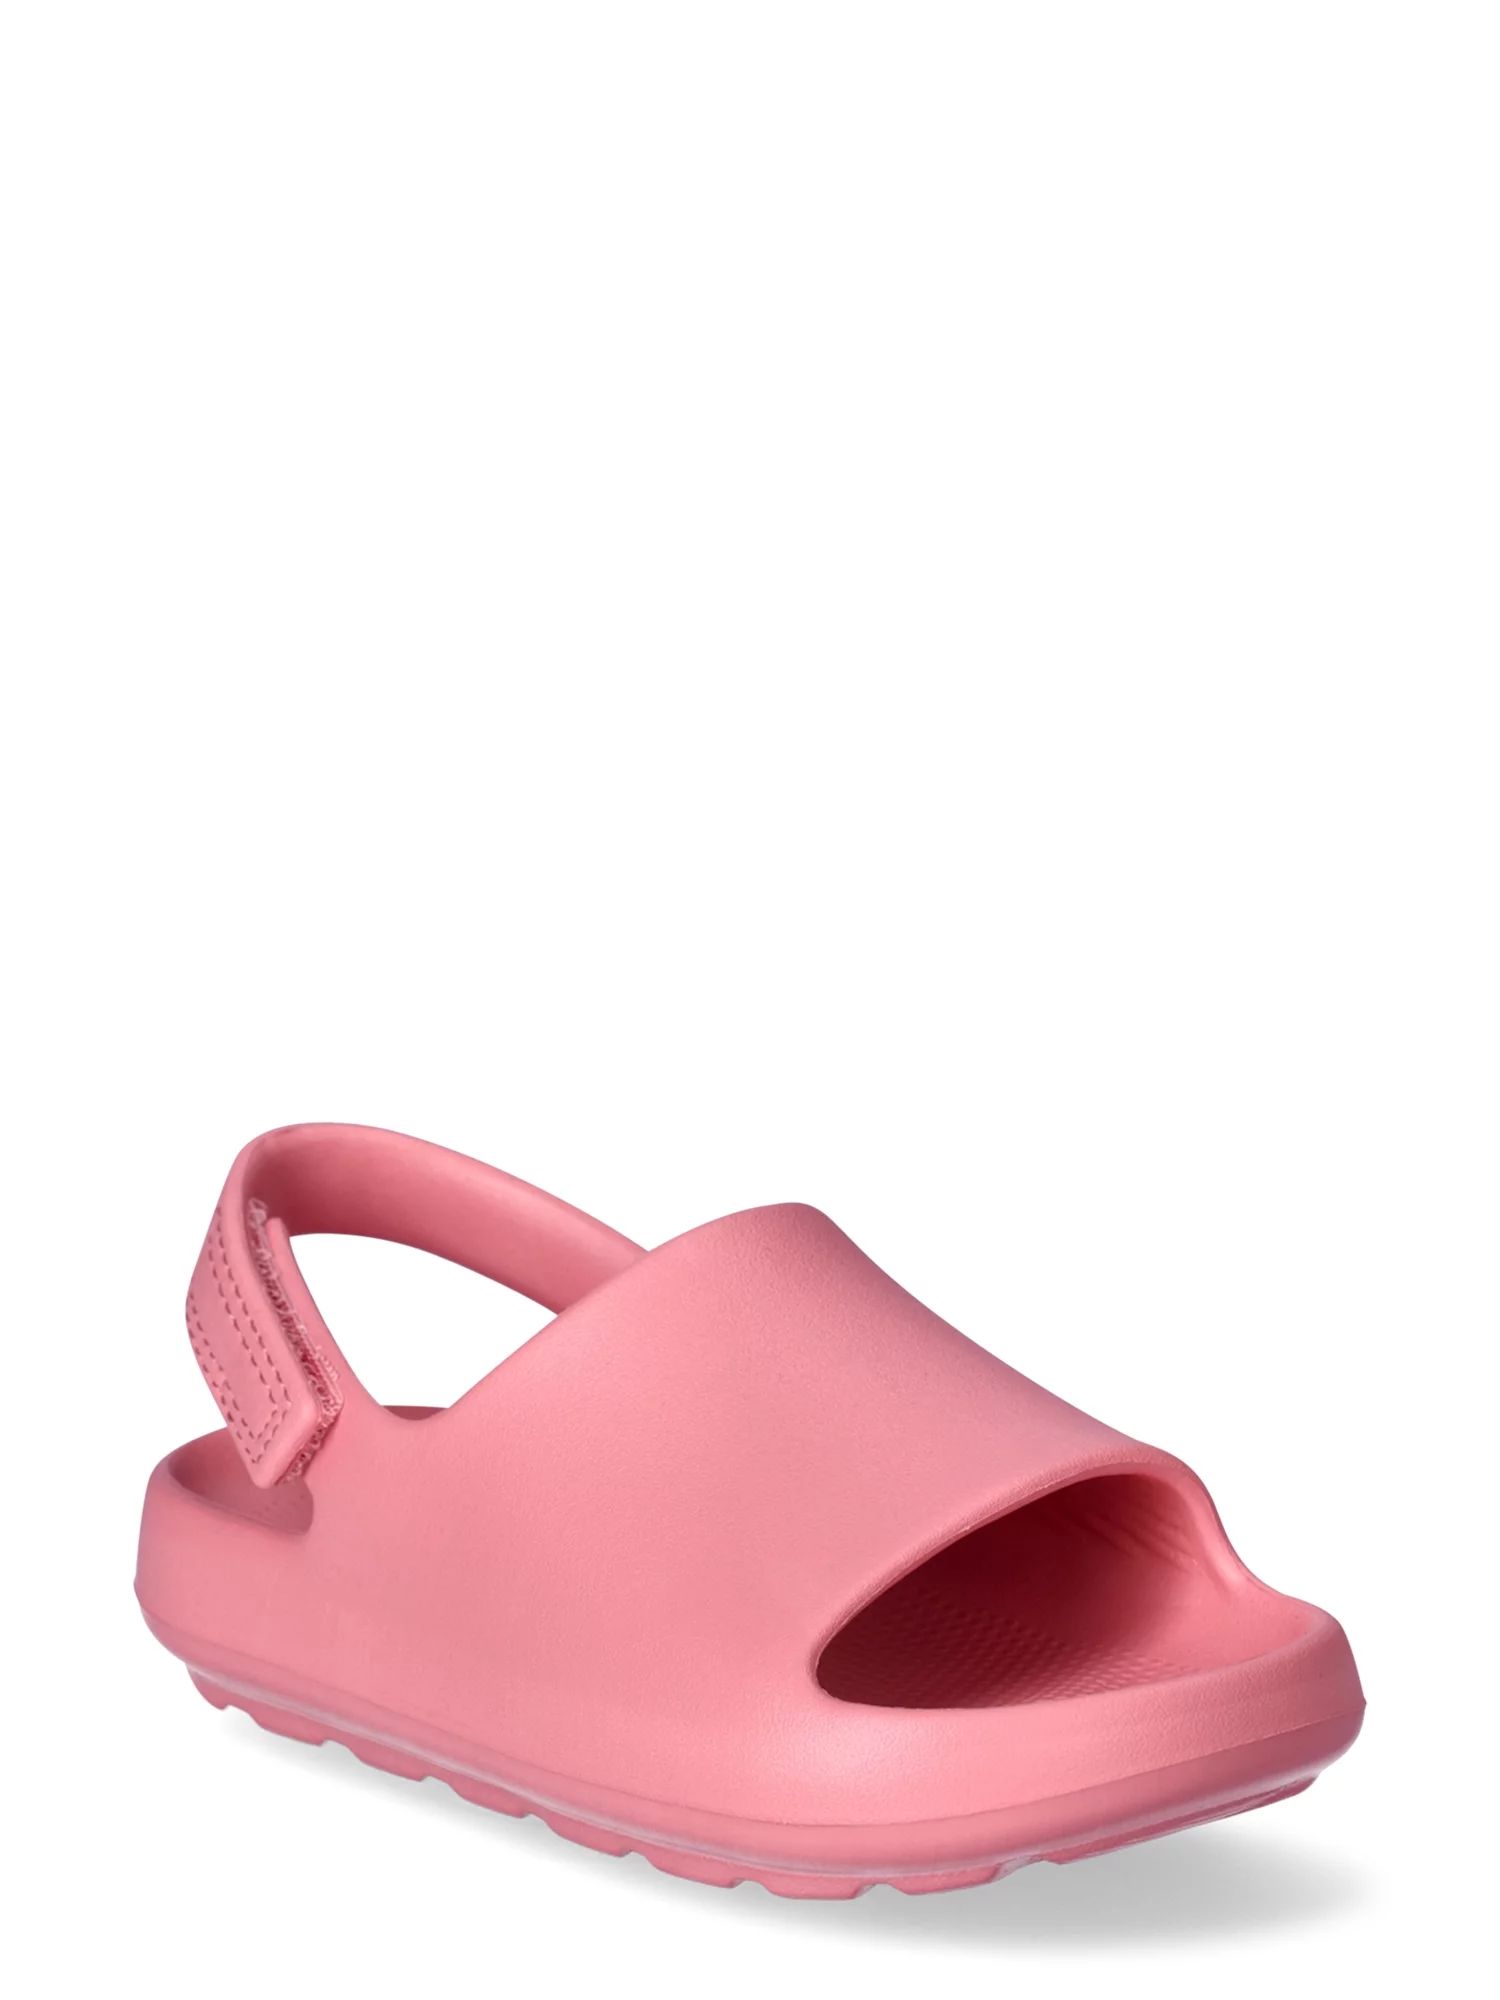 Wonder Nation Toddler Girls Eva Slide Sandals | Walmart (US)